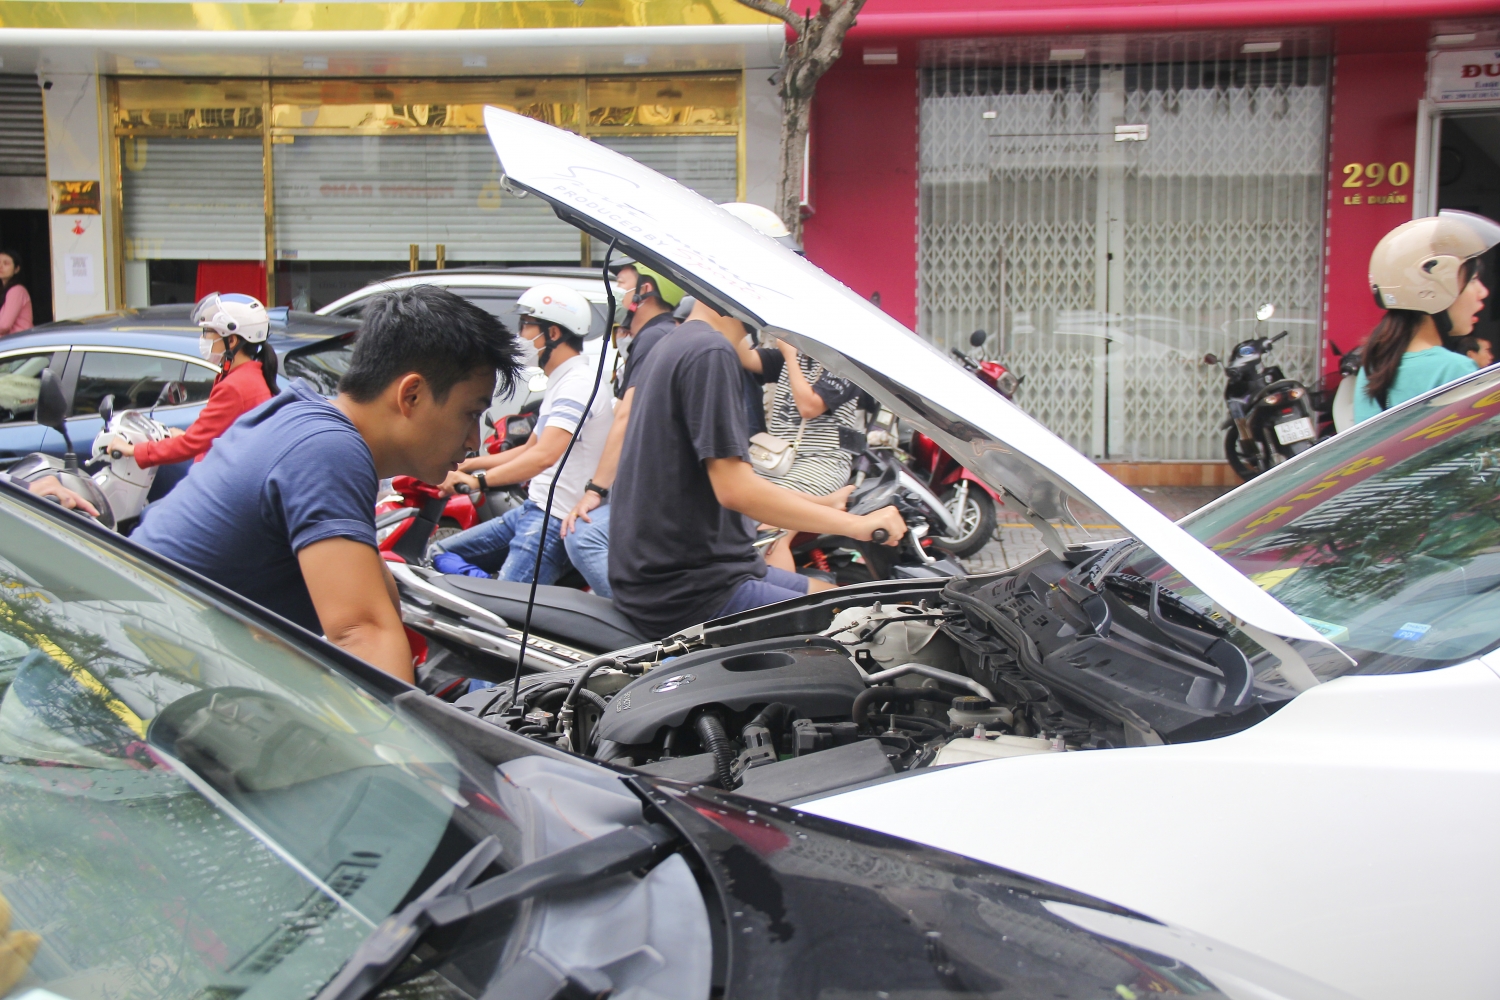 Hàng loạt ôtô hỏng bị bỏ lại trên đường sau trận ngập nặng tại Đà Nẵng